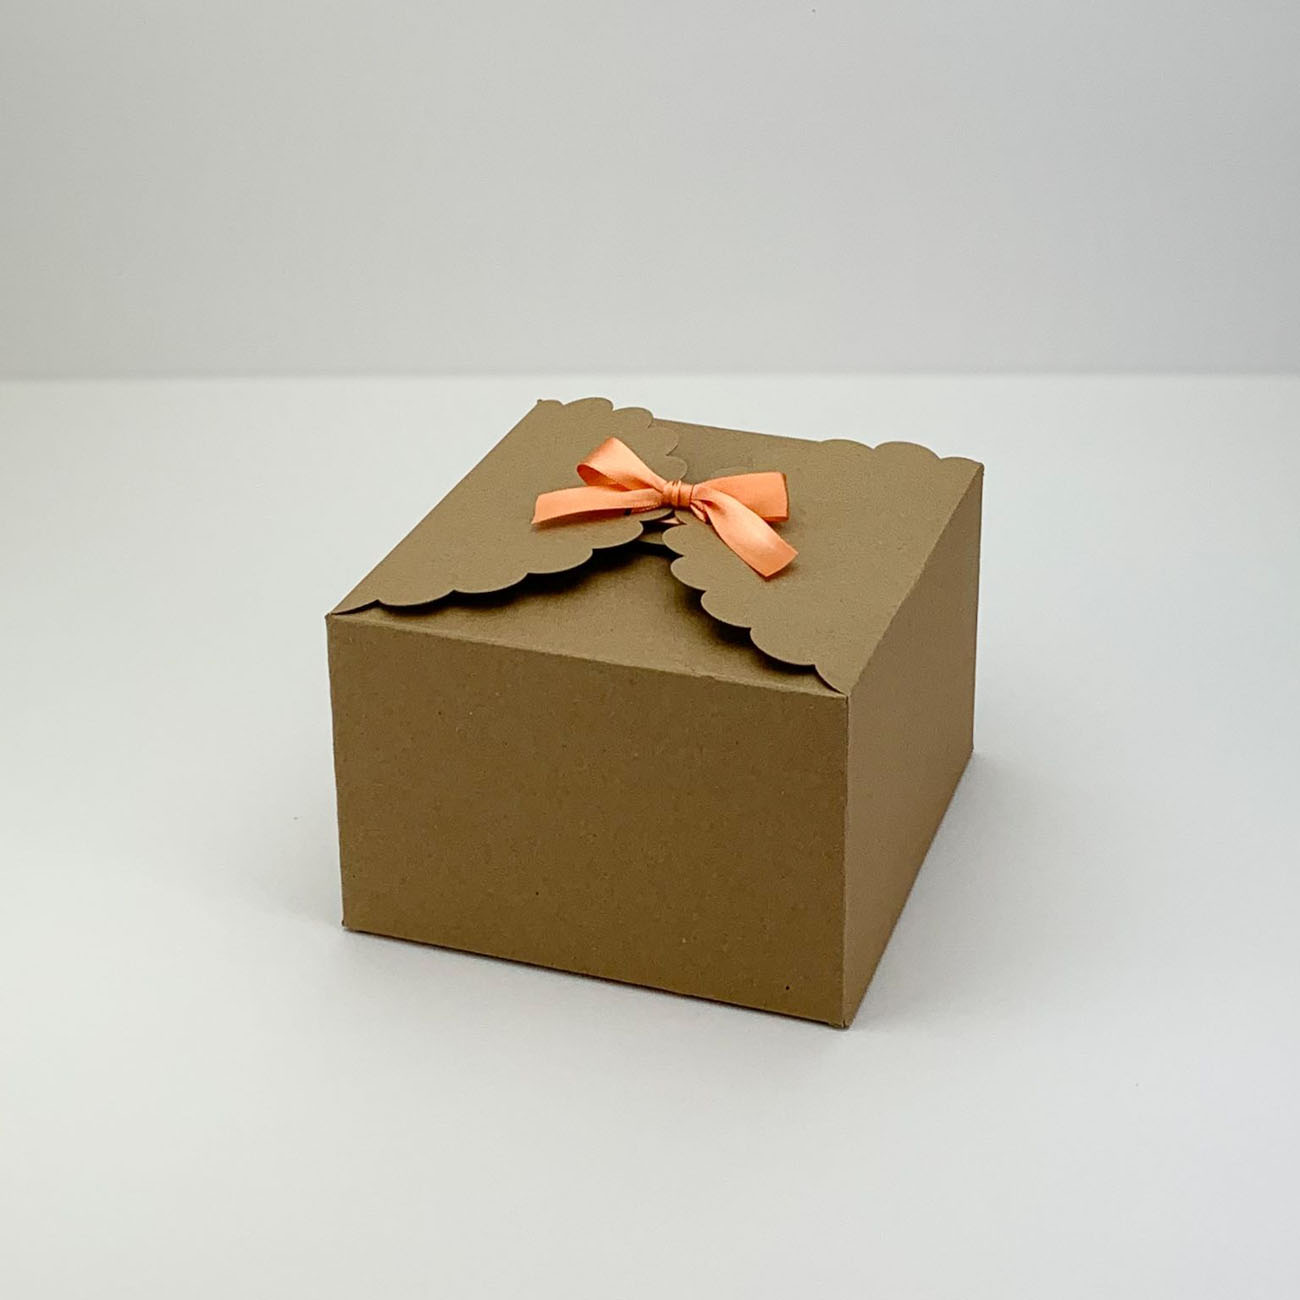 Svatební krabička na výslužku - K66-6222-10